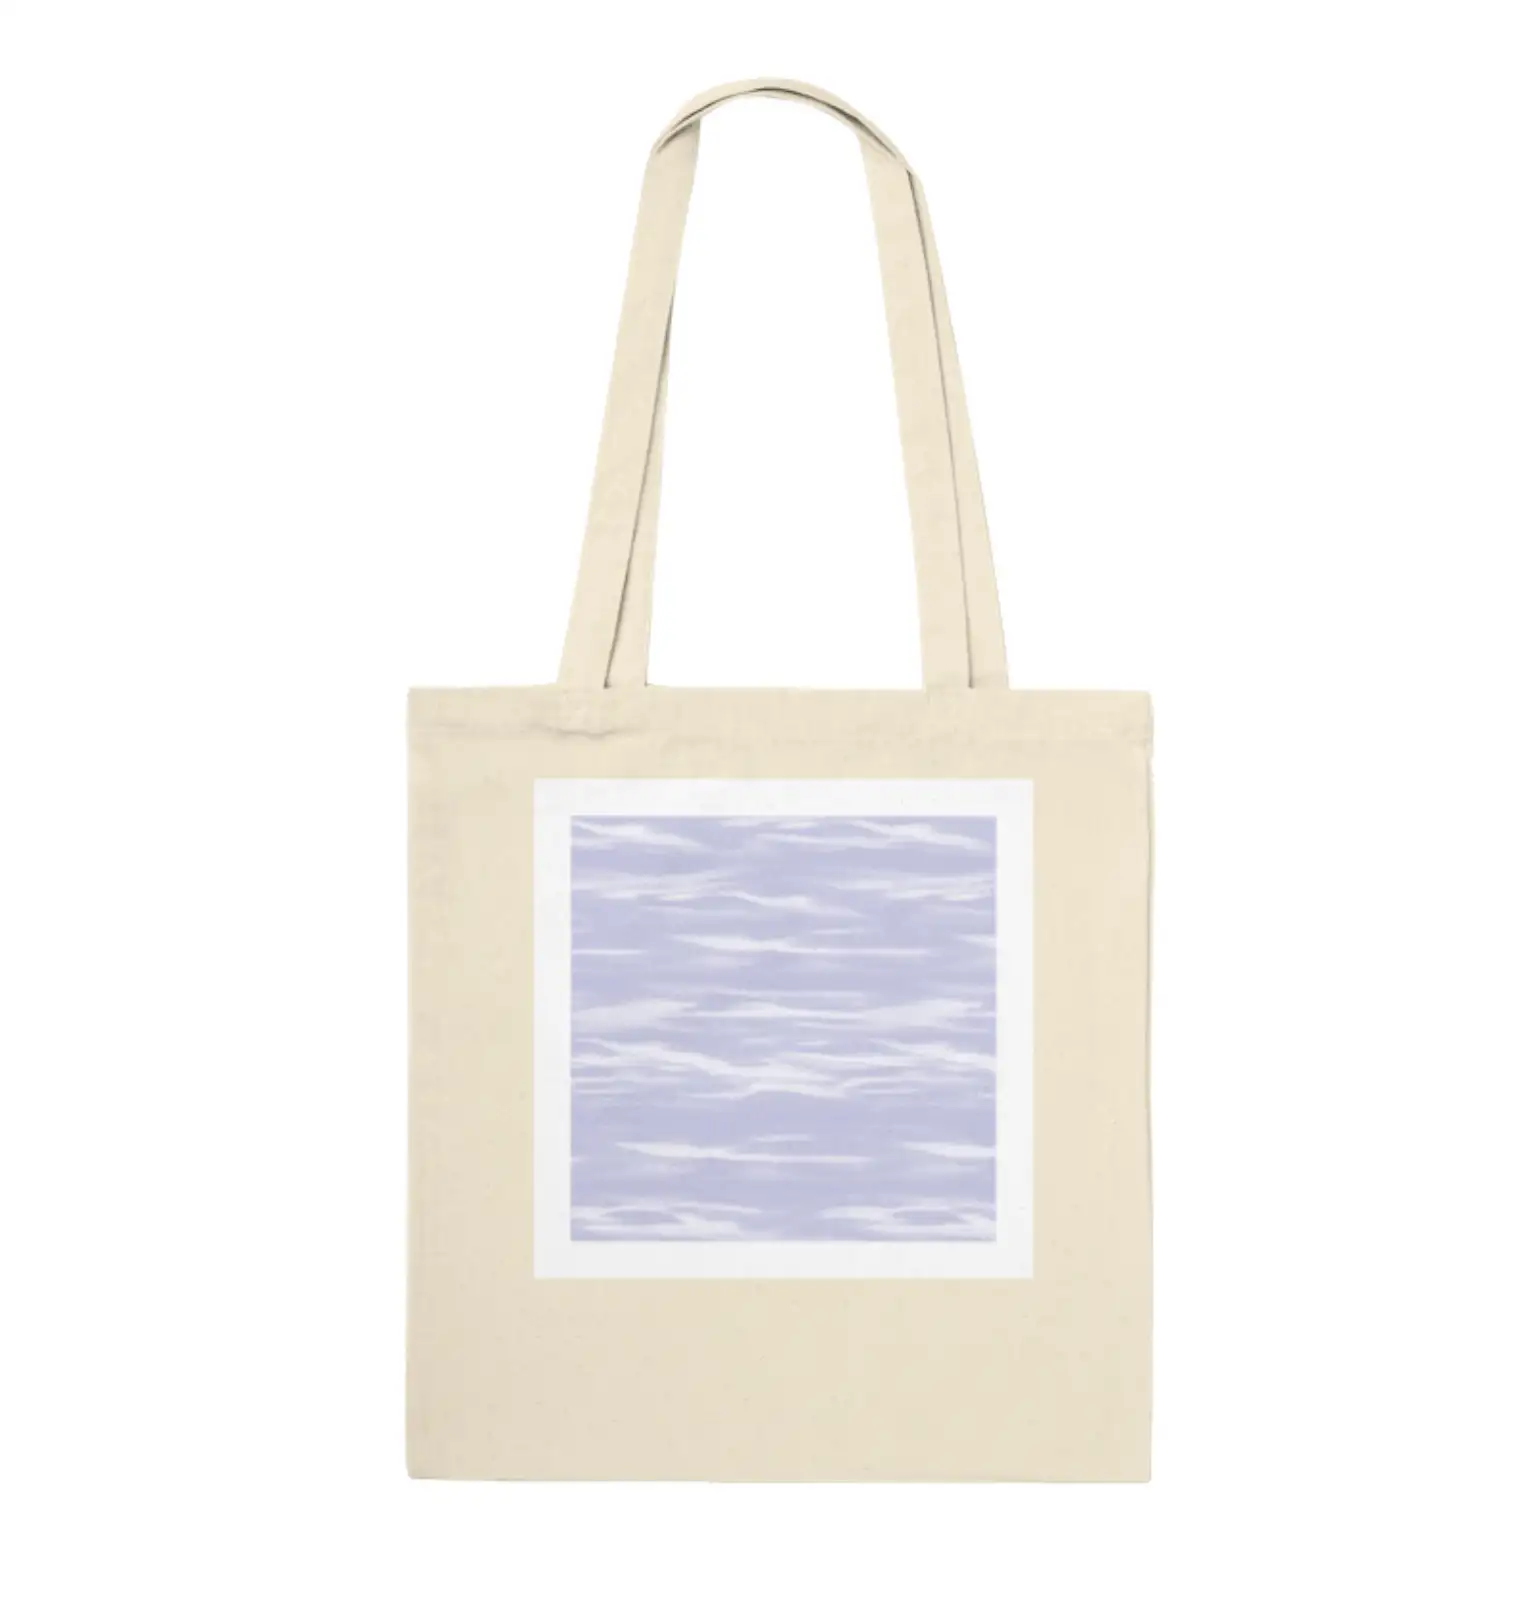 ‘Waves’ Tote Bag